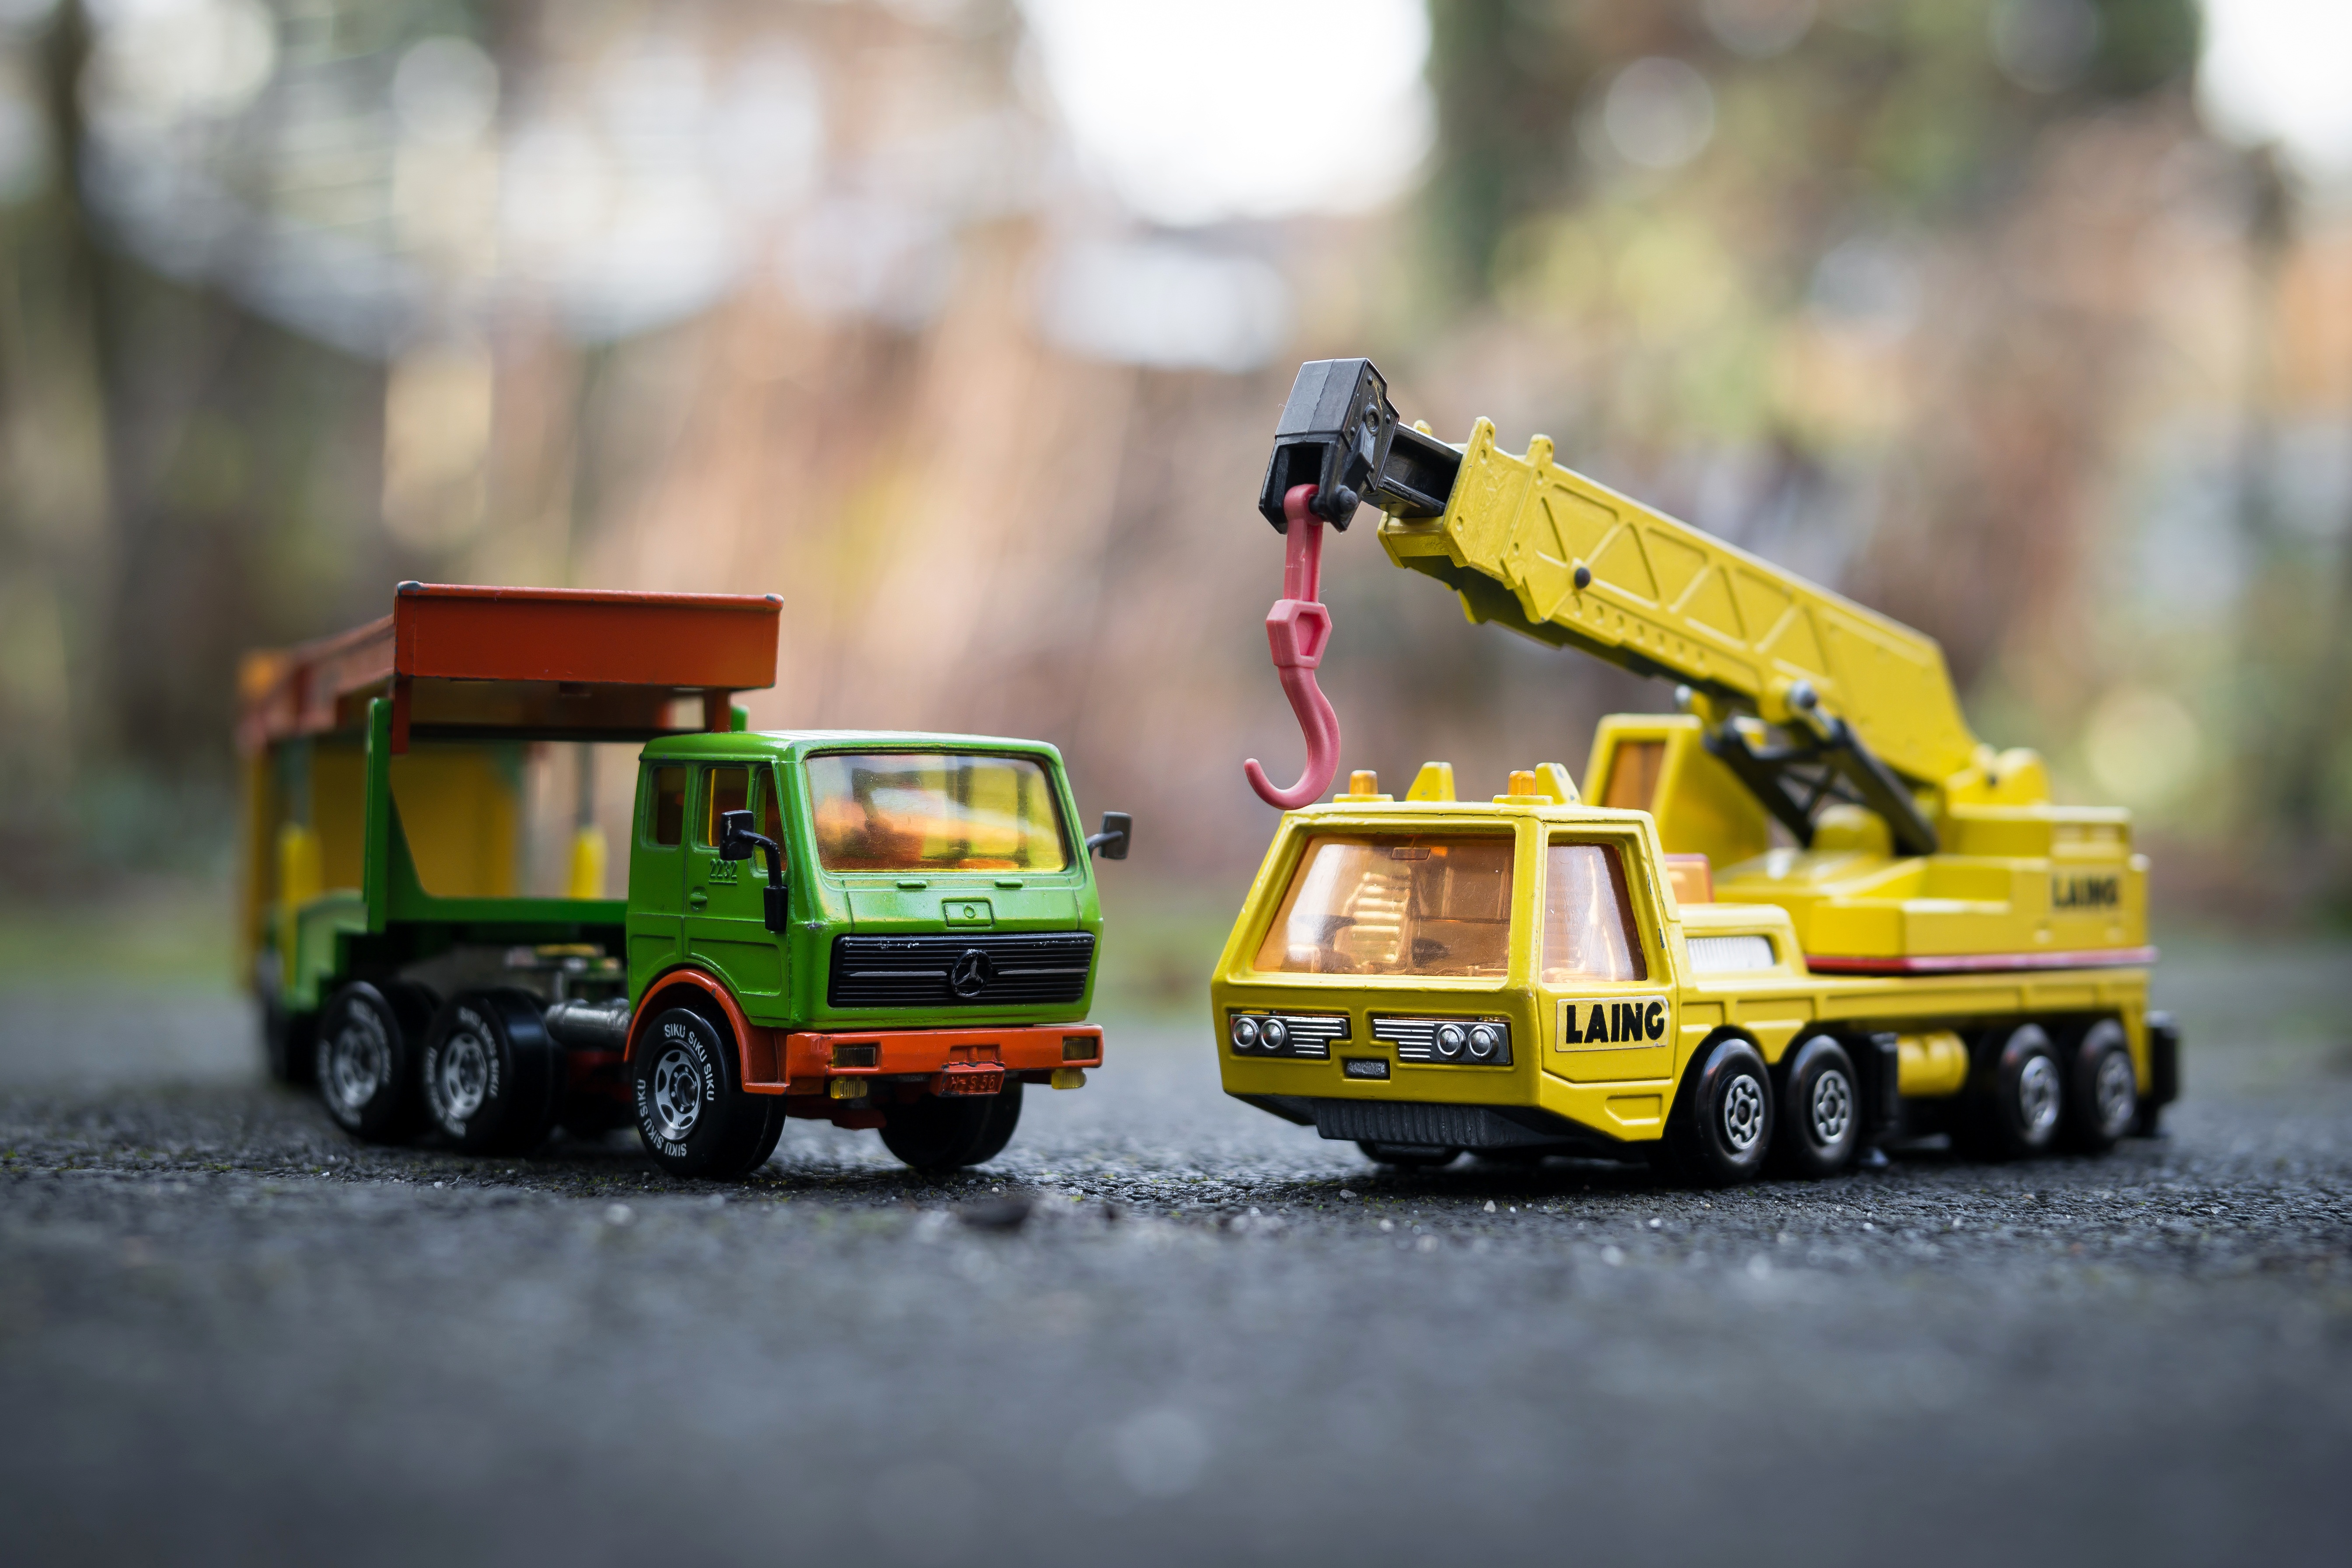 Crane Toy Truck 5378x3585